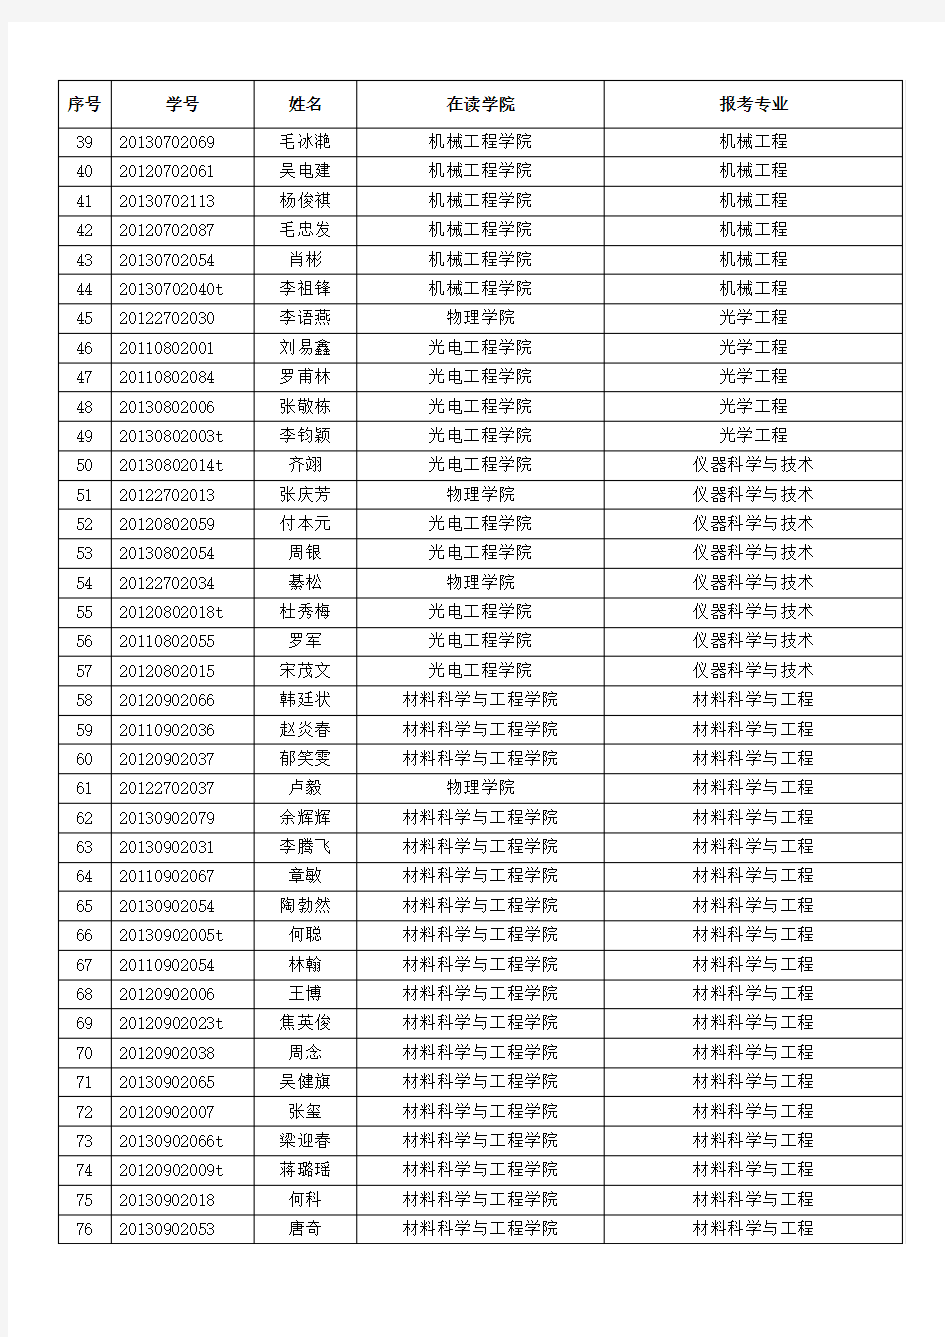 重庆大学2014春季入学拟录取硕博连读生名单